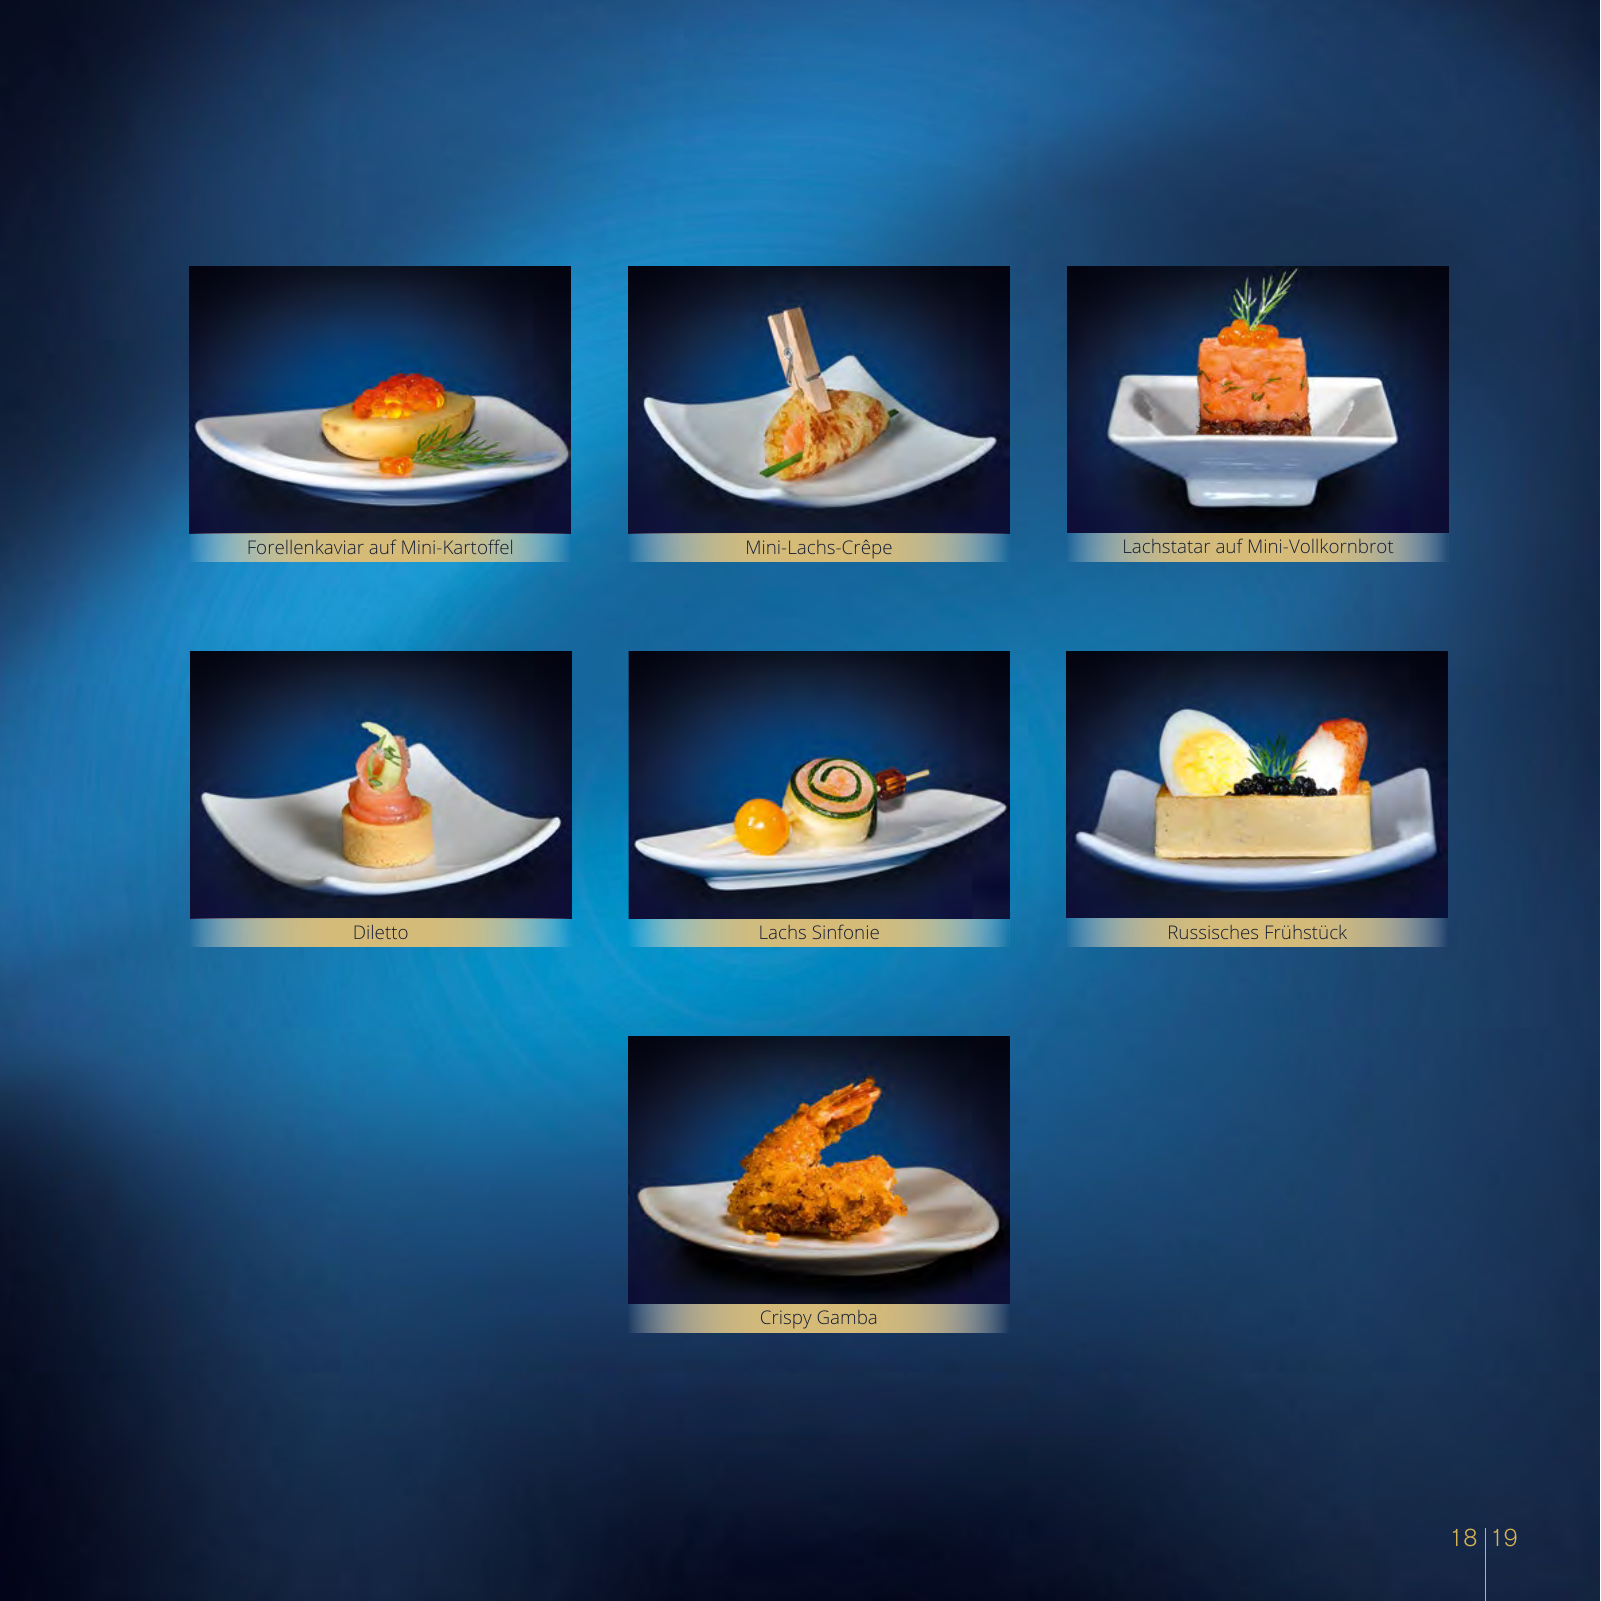 Vorschau Catering Katalog 2018/2019 Seite 19